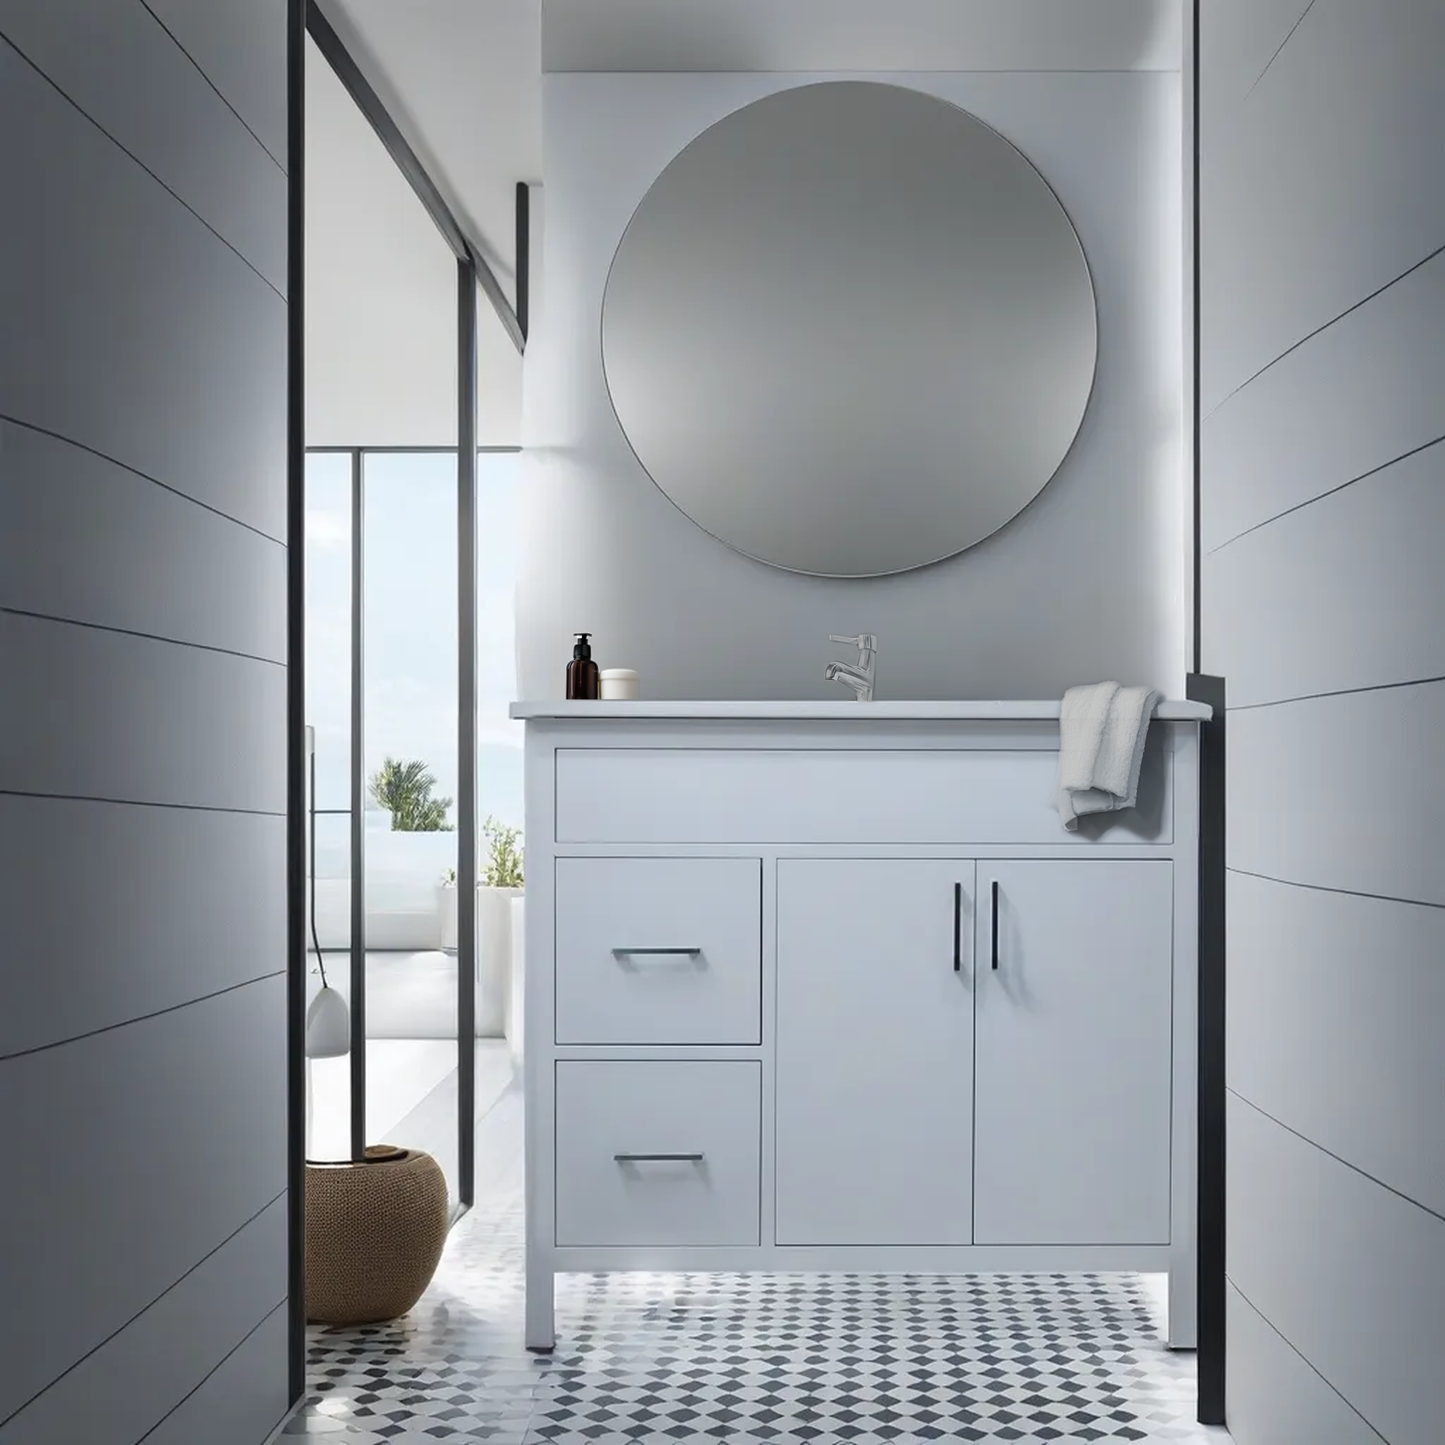 Mirea style white 36 " bathroom vanity with Quartz top